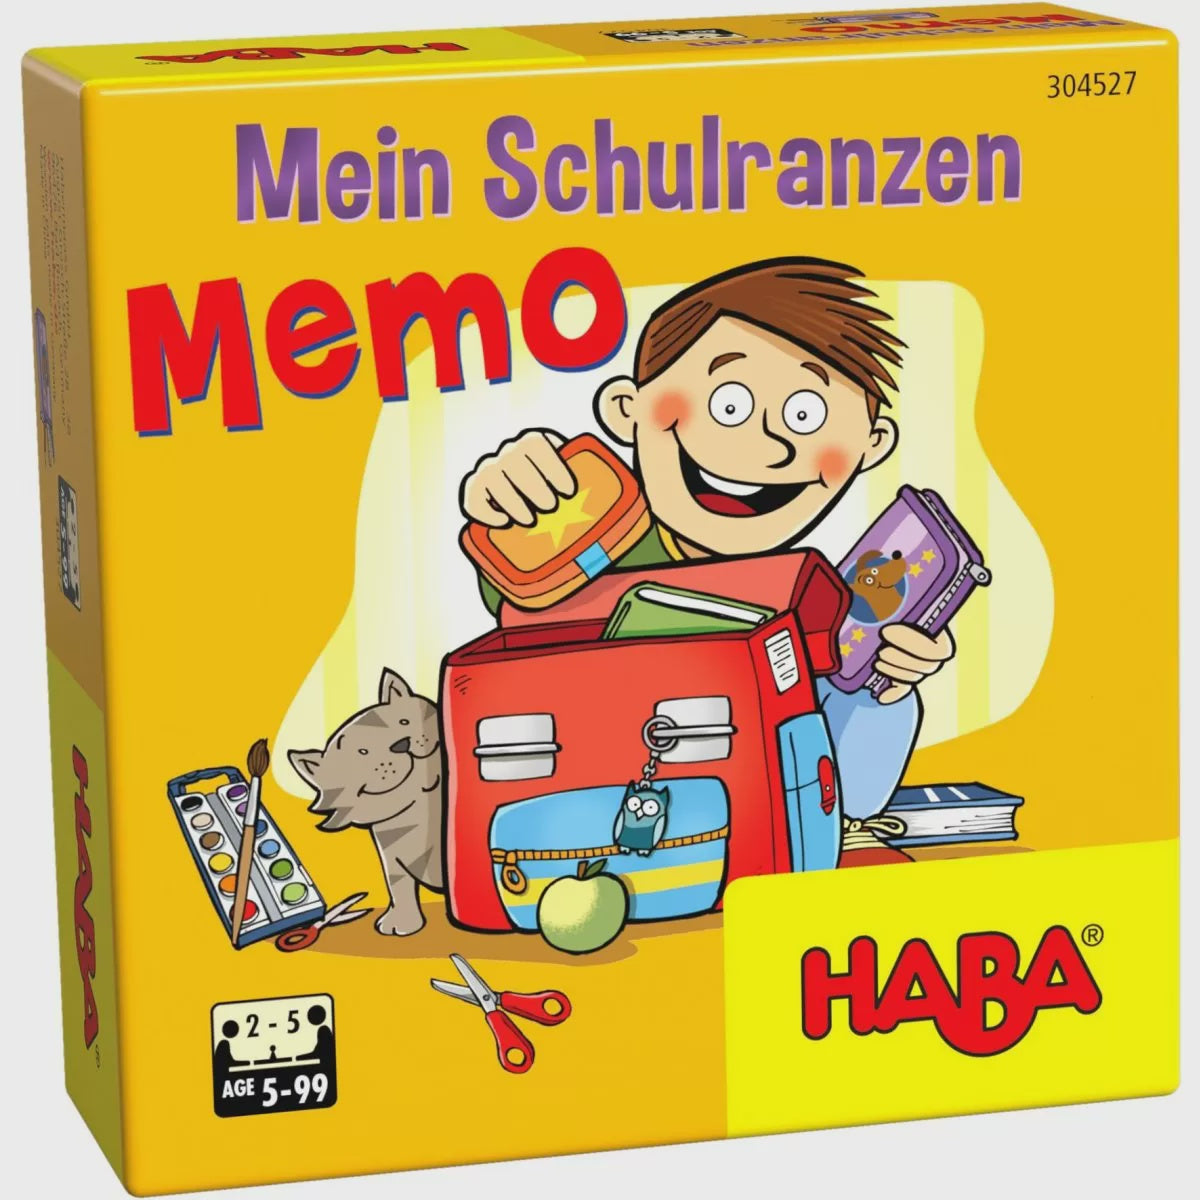 My Backpack Memory Game - Mein Schulranzen Memo